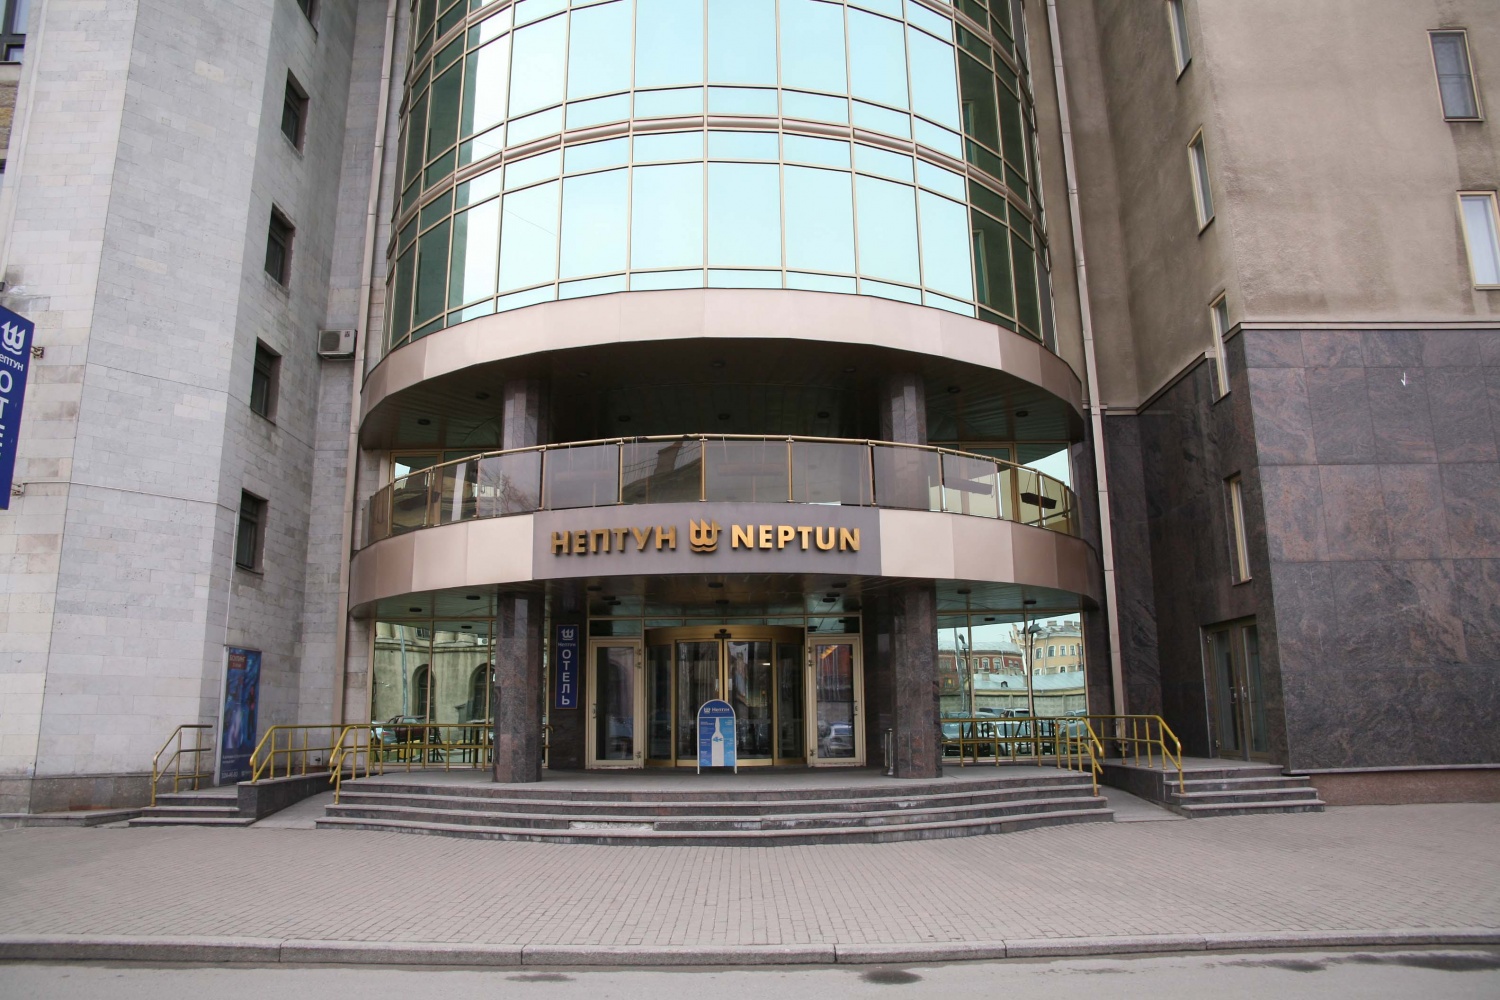 отель нептун санкт петербург официальный